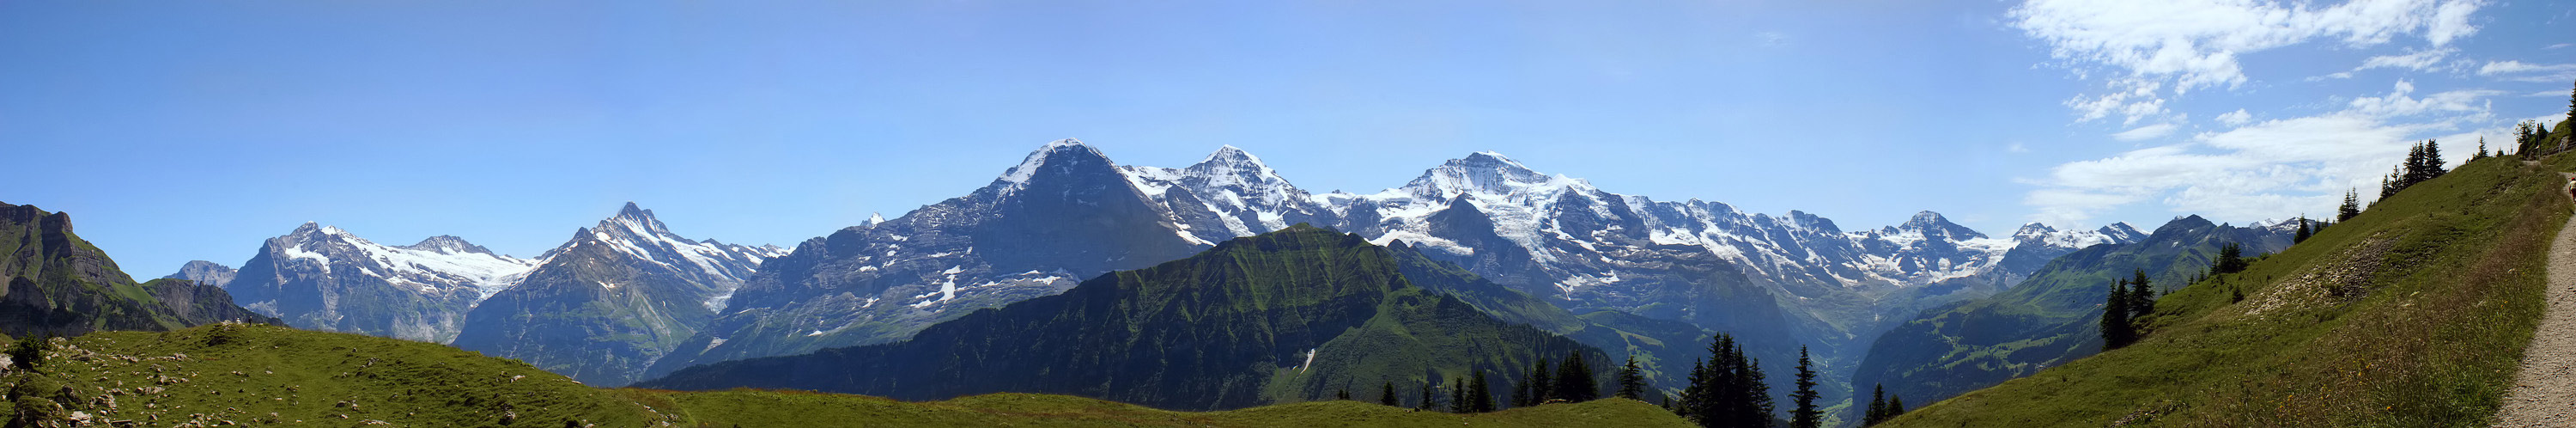 Eiger, Mönch und Jungfrau 2. Pano-Versuch